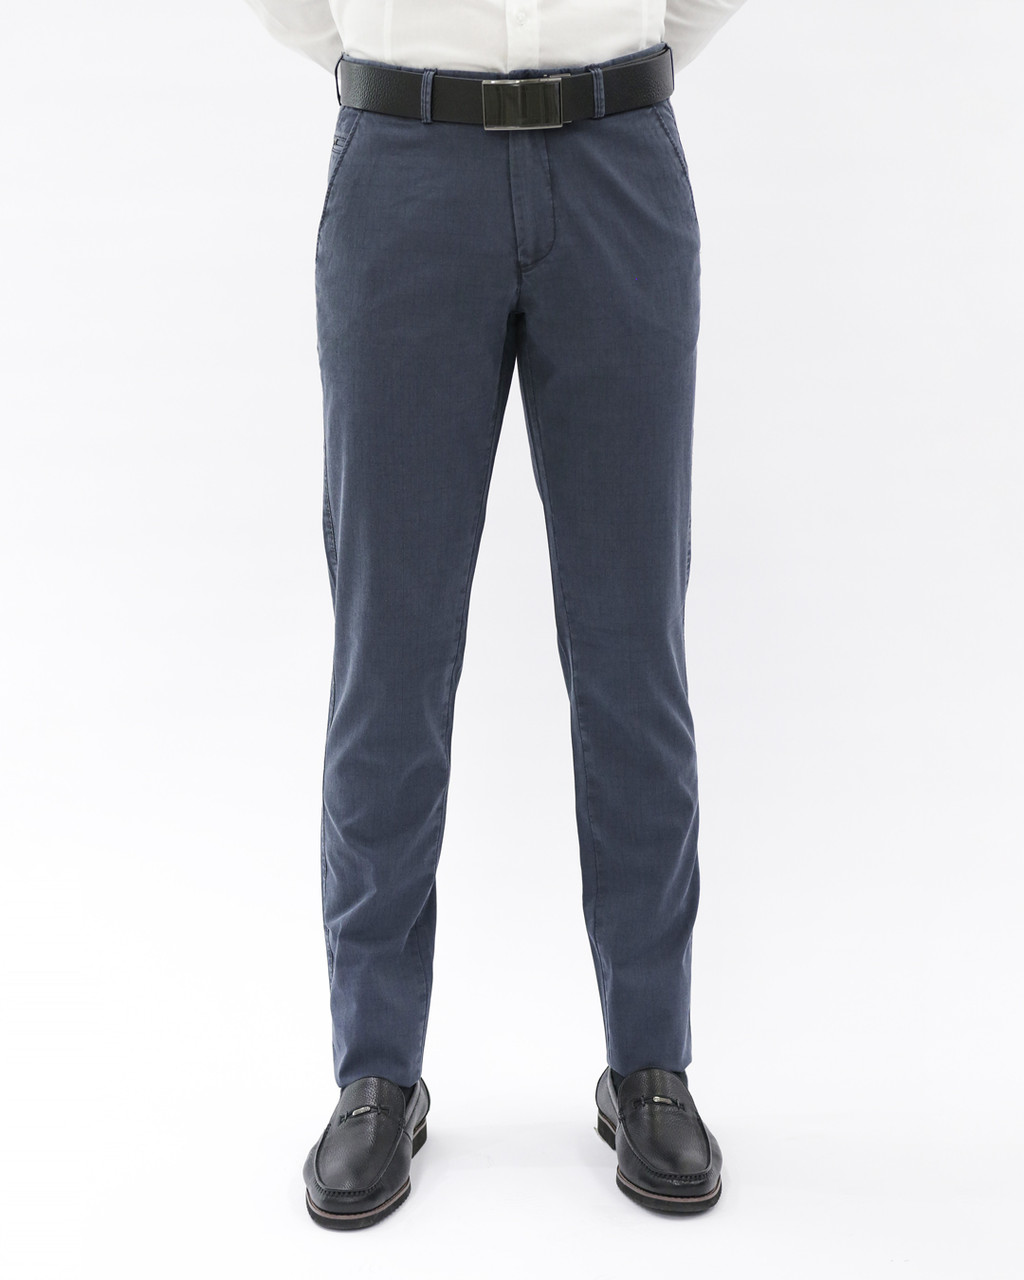 Мужские повседневные брюки «UM&H 40196313» синий, фото 1